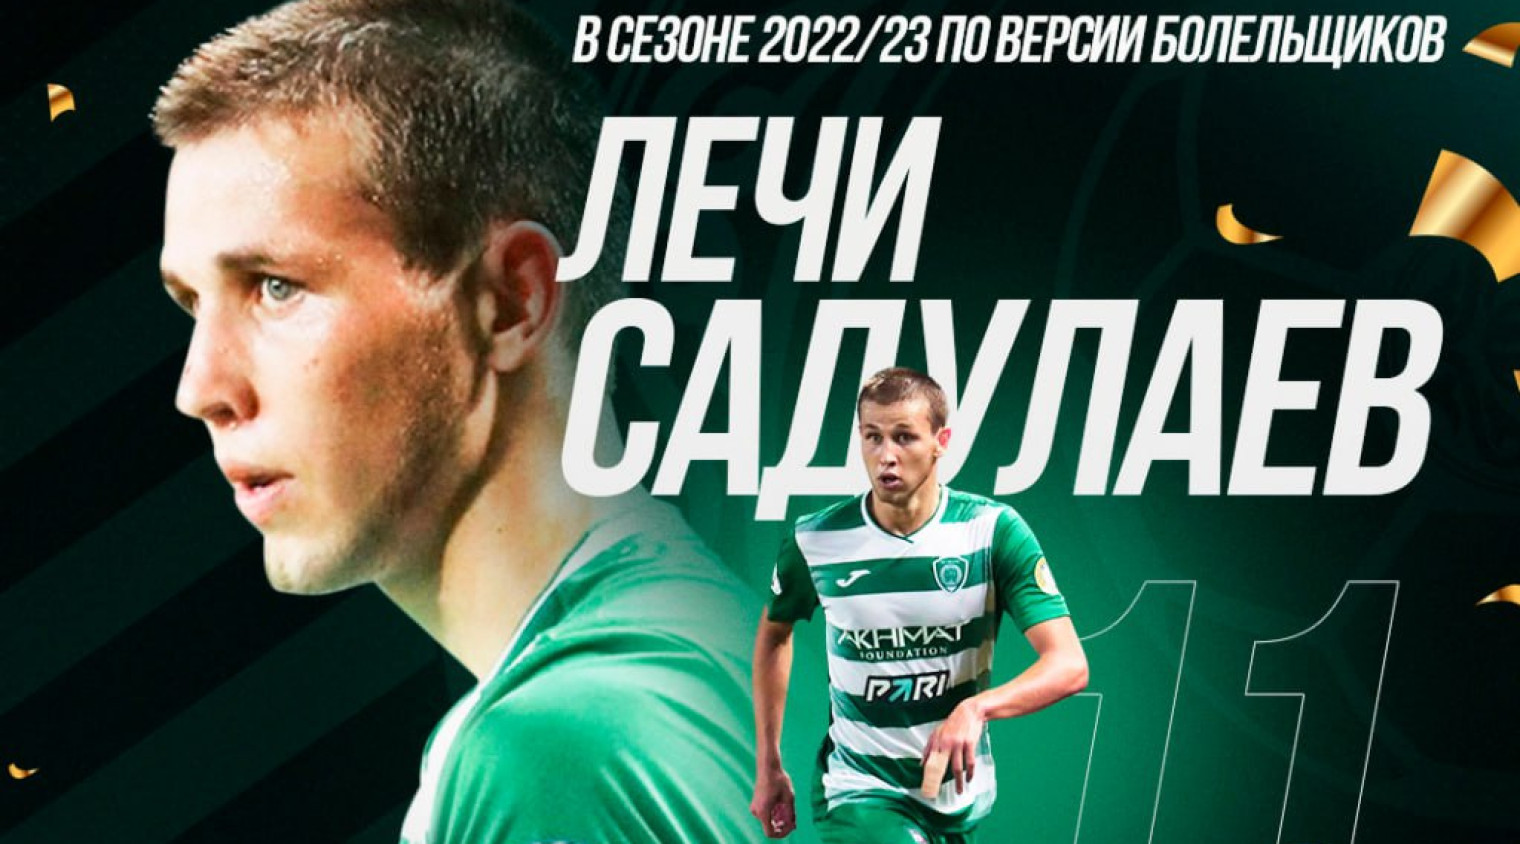 Лечи Садулаев - лучший игрок ФК "Ахмат" в сезоне 2022/23 по версии болельщиков!